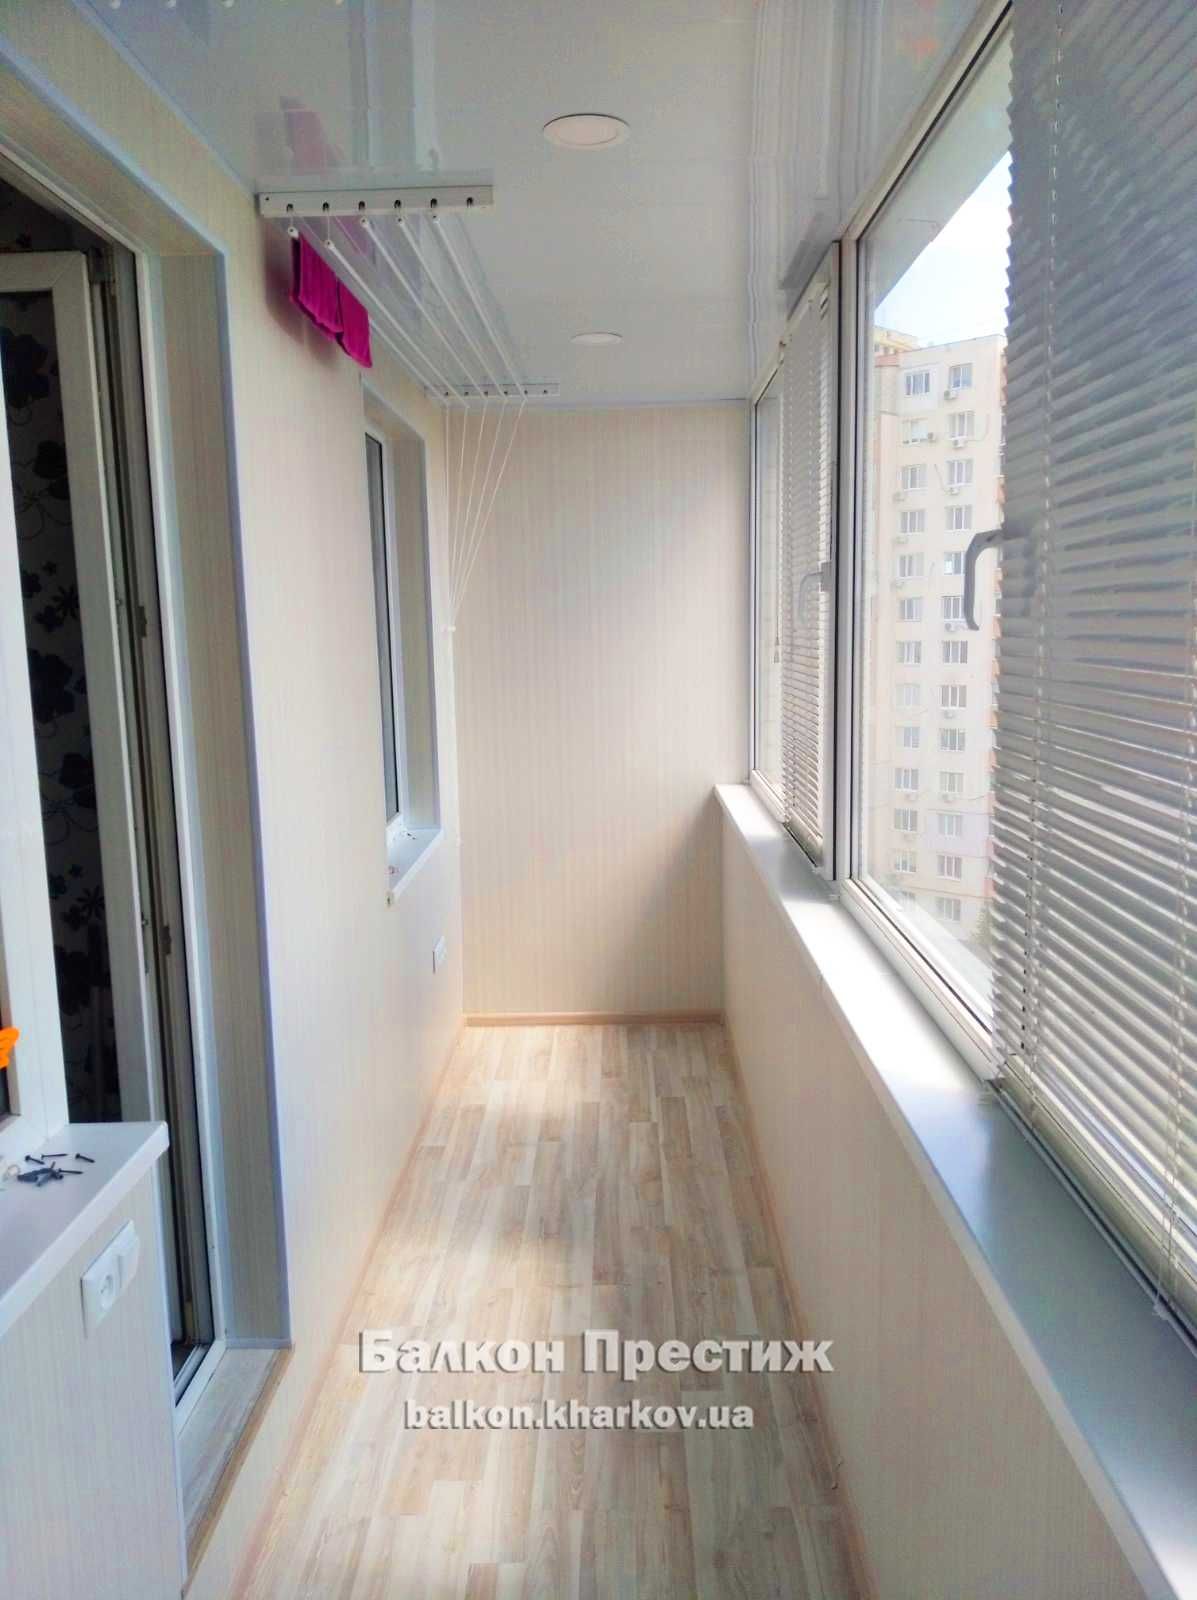 ОБШИВКА, остекление, ремонт балконов Харьков